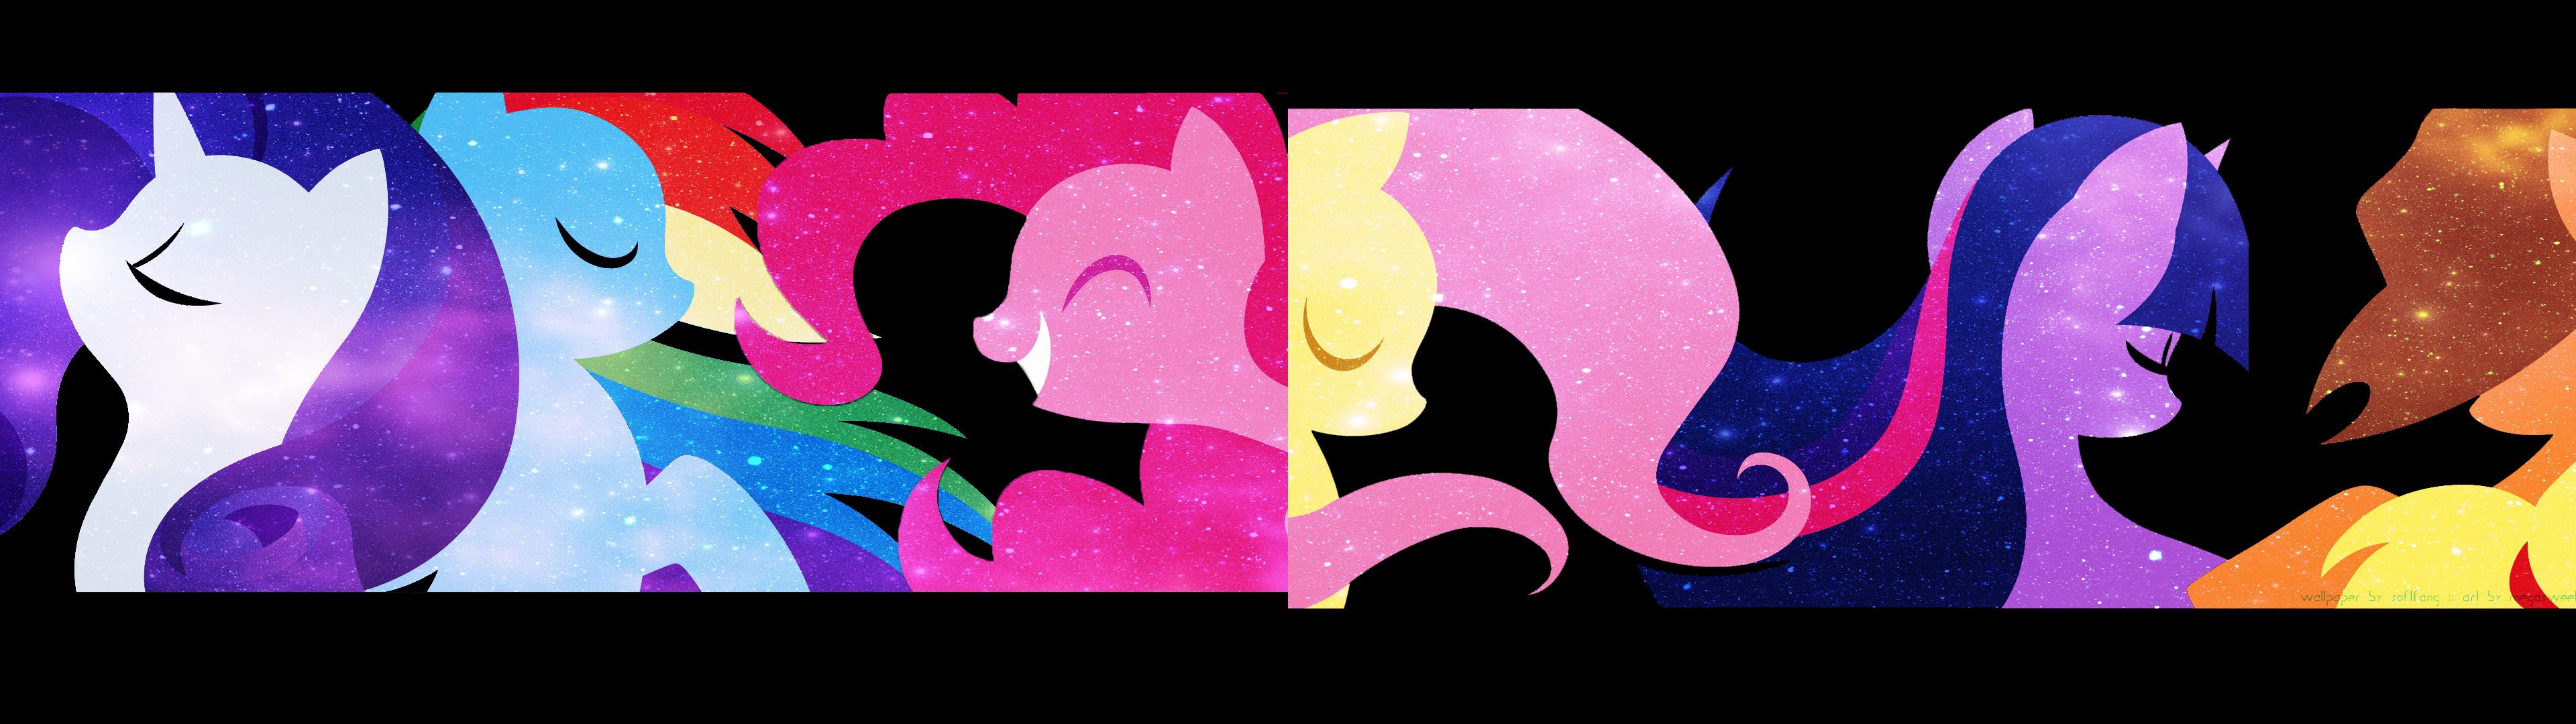 My Little Pony Rarity Rainbow Dash Pinkie Pie Fluttershy Applejack Twilight Sparkle 3840x1080